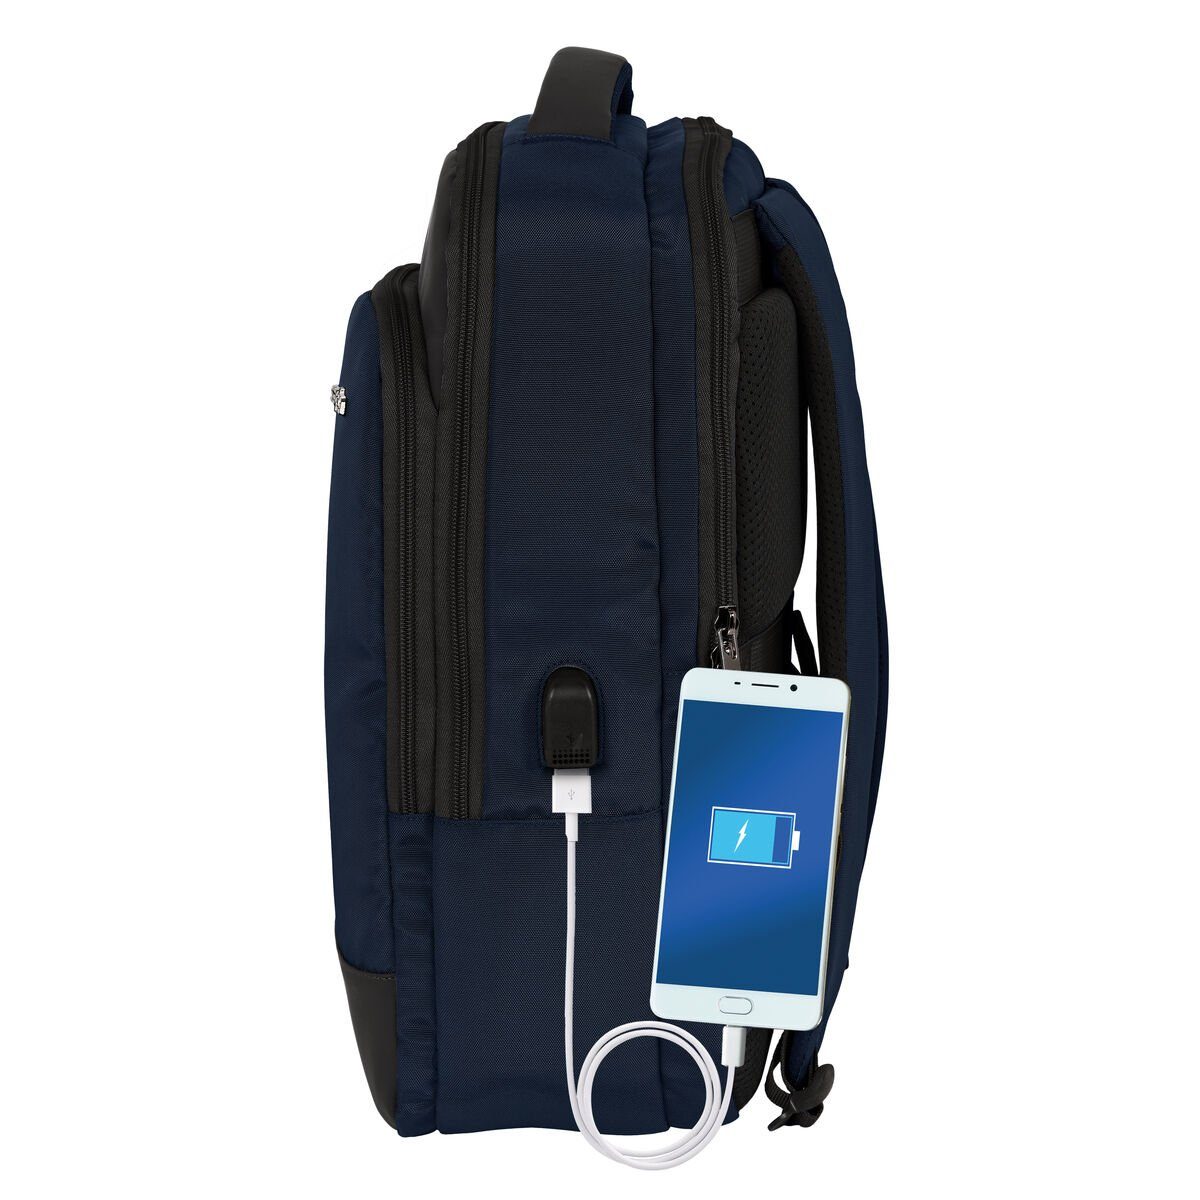 safta Rucksack Laptop- und Safta USB-Anschluss Dunkelbla Tablet-Rucksack mit Business